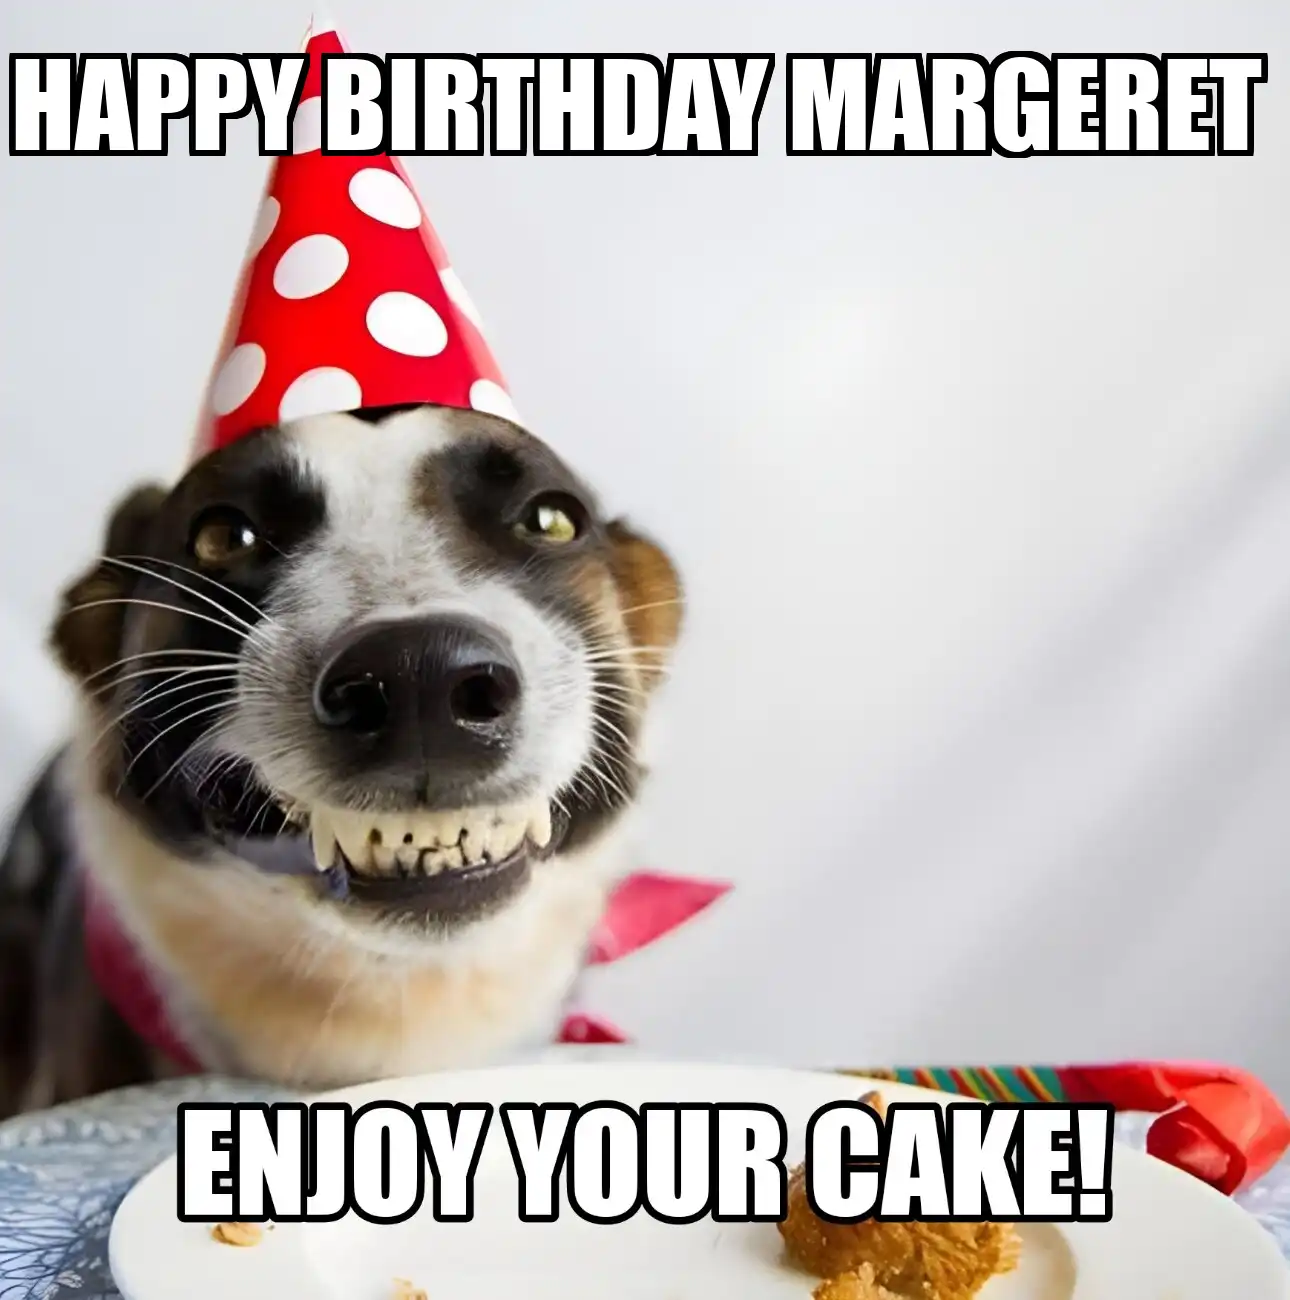 Happy Birthday Margeret Enjoy Your Cake Dog Meme